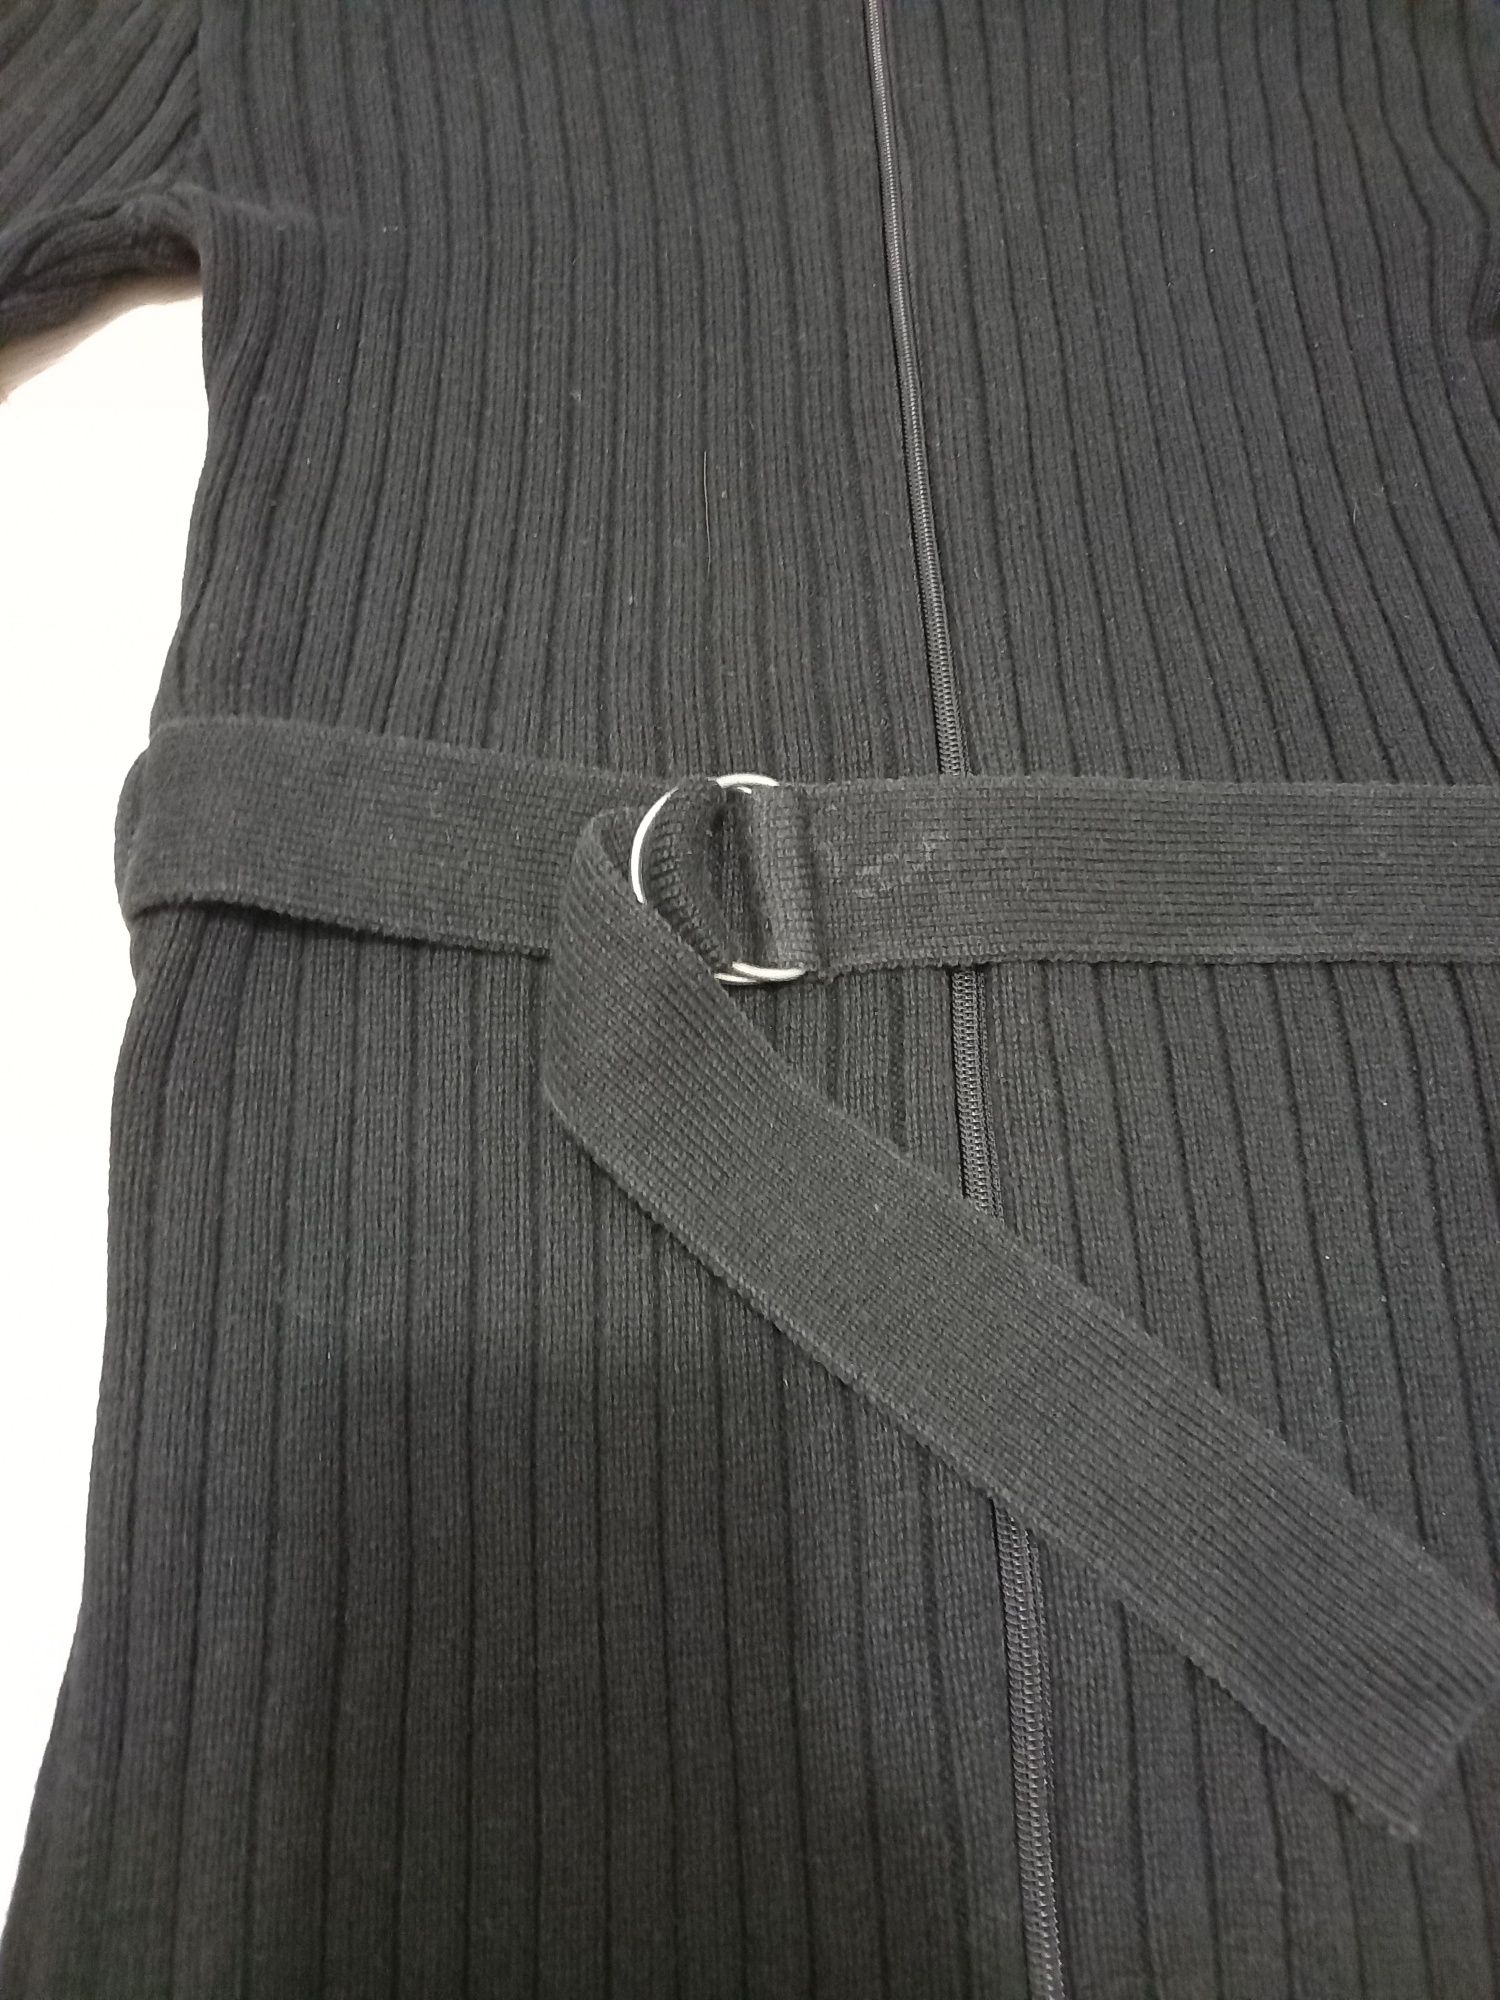 Długi czarny sweter golf zapinany na zamek z paskiem.